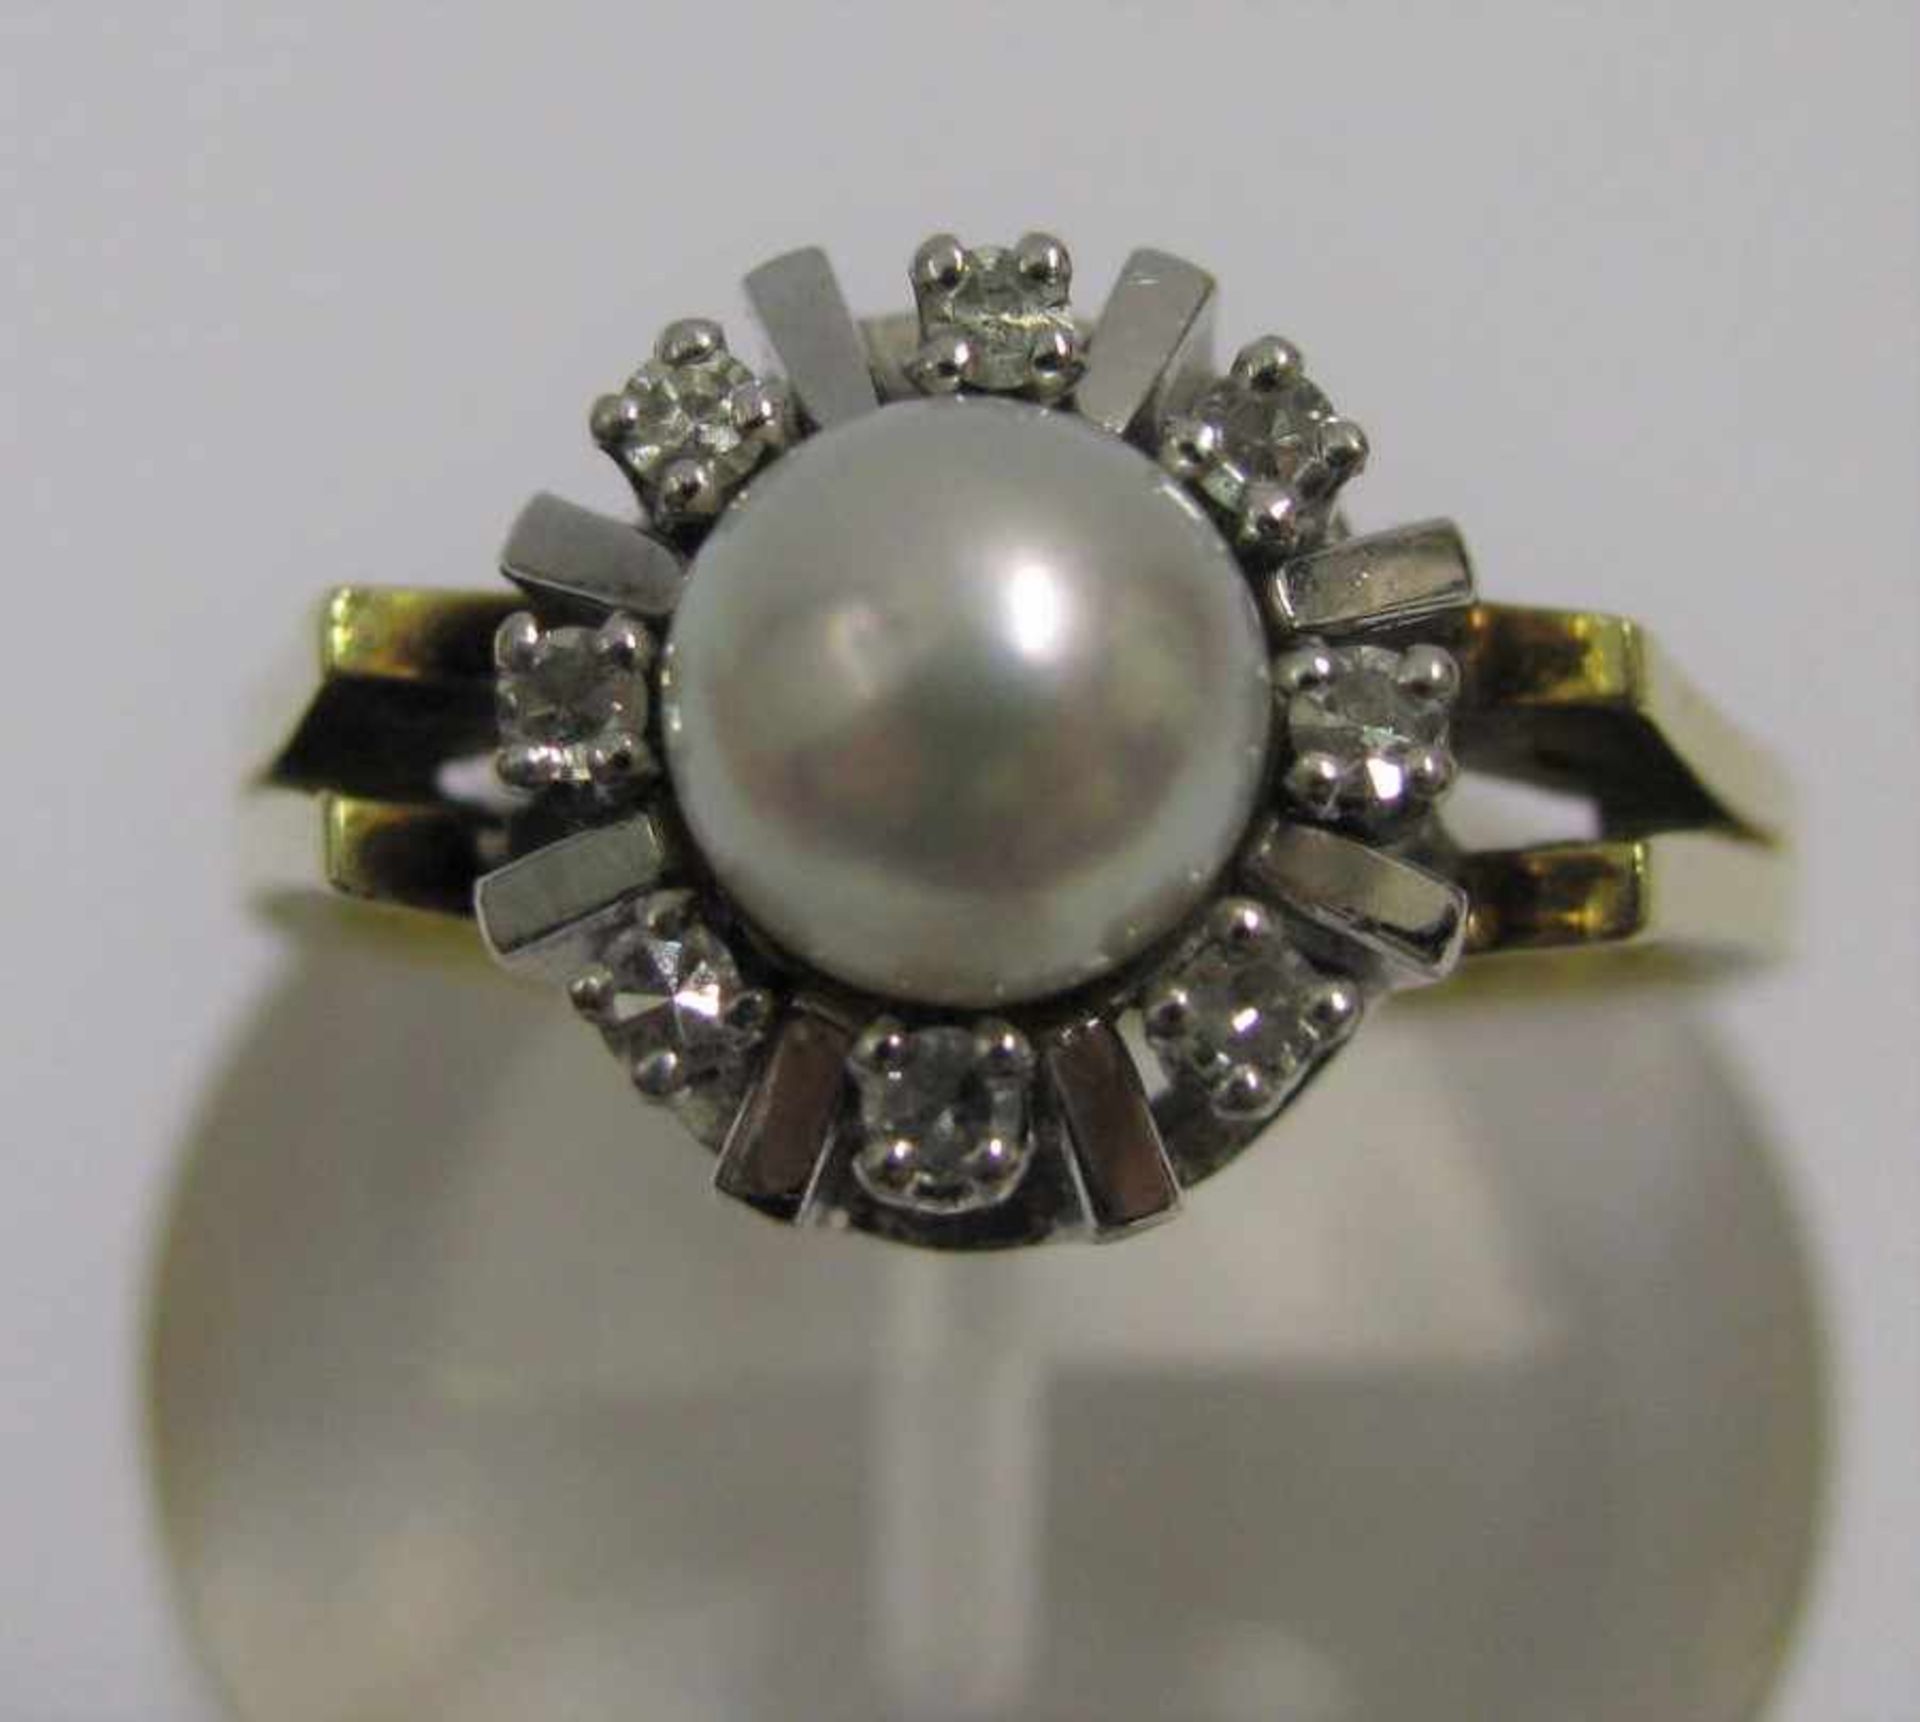 Damenring, Perle, 8 Brillanten, 585er Gelb- und Weißgold, 5,6 g, Ringgr. 55/56.